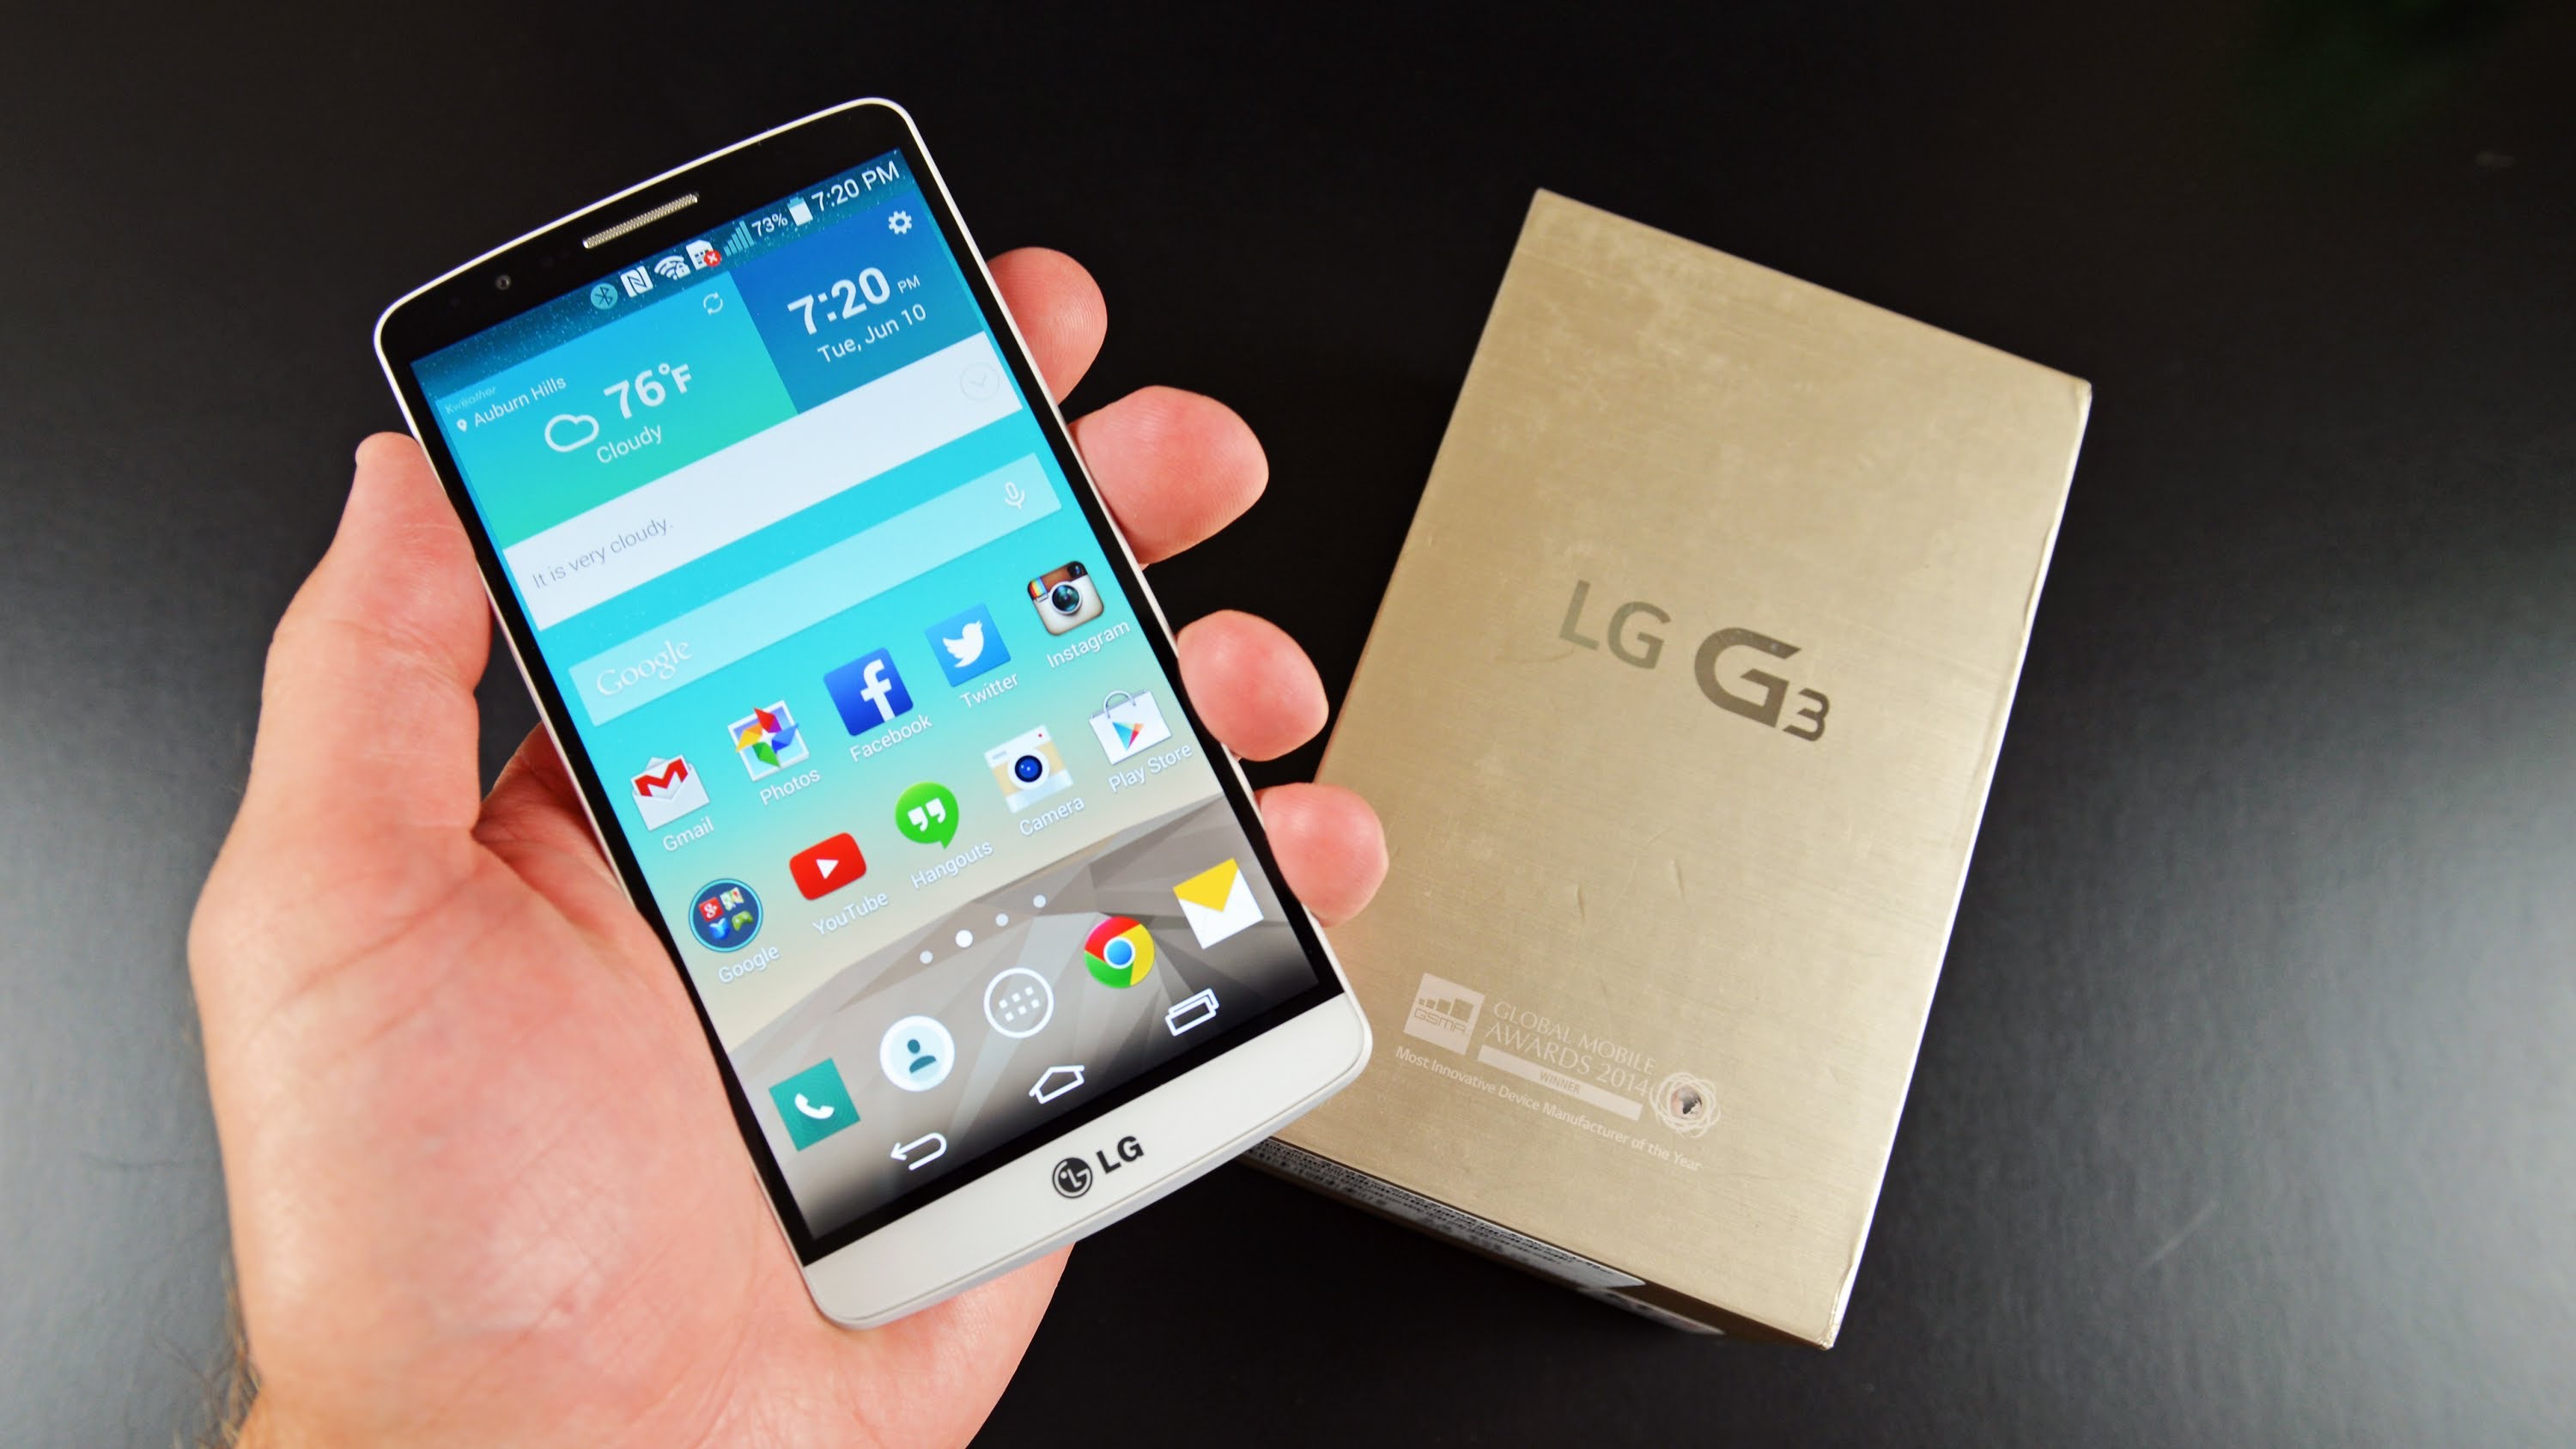 Smartphone LG G3 đang dẫn đầu thương hiệu LG về chất lượng